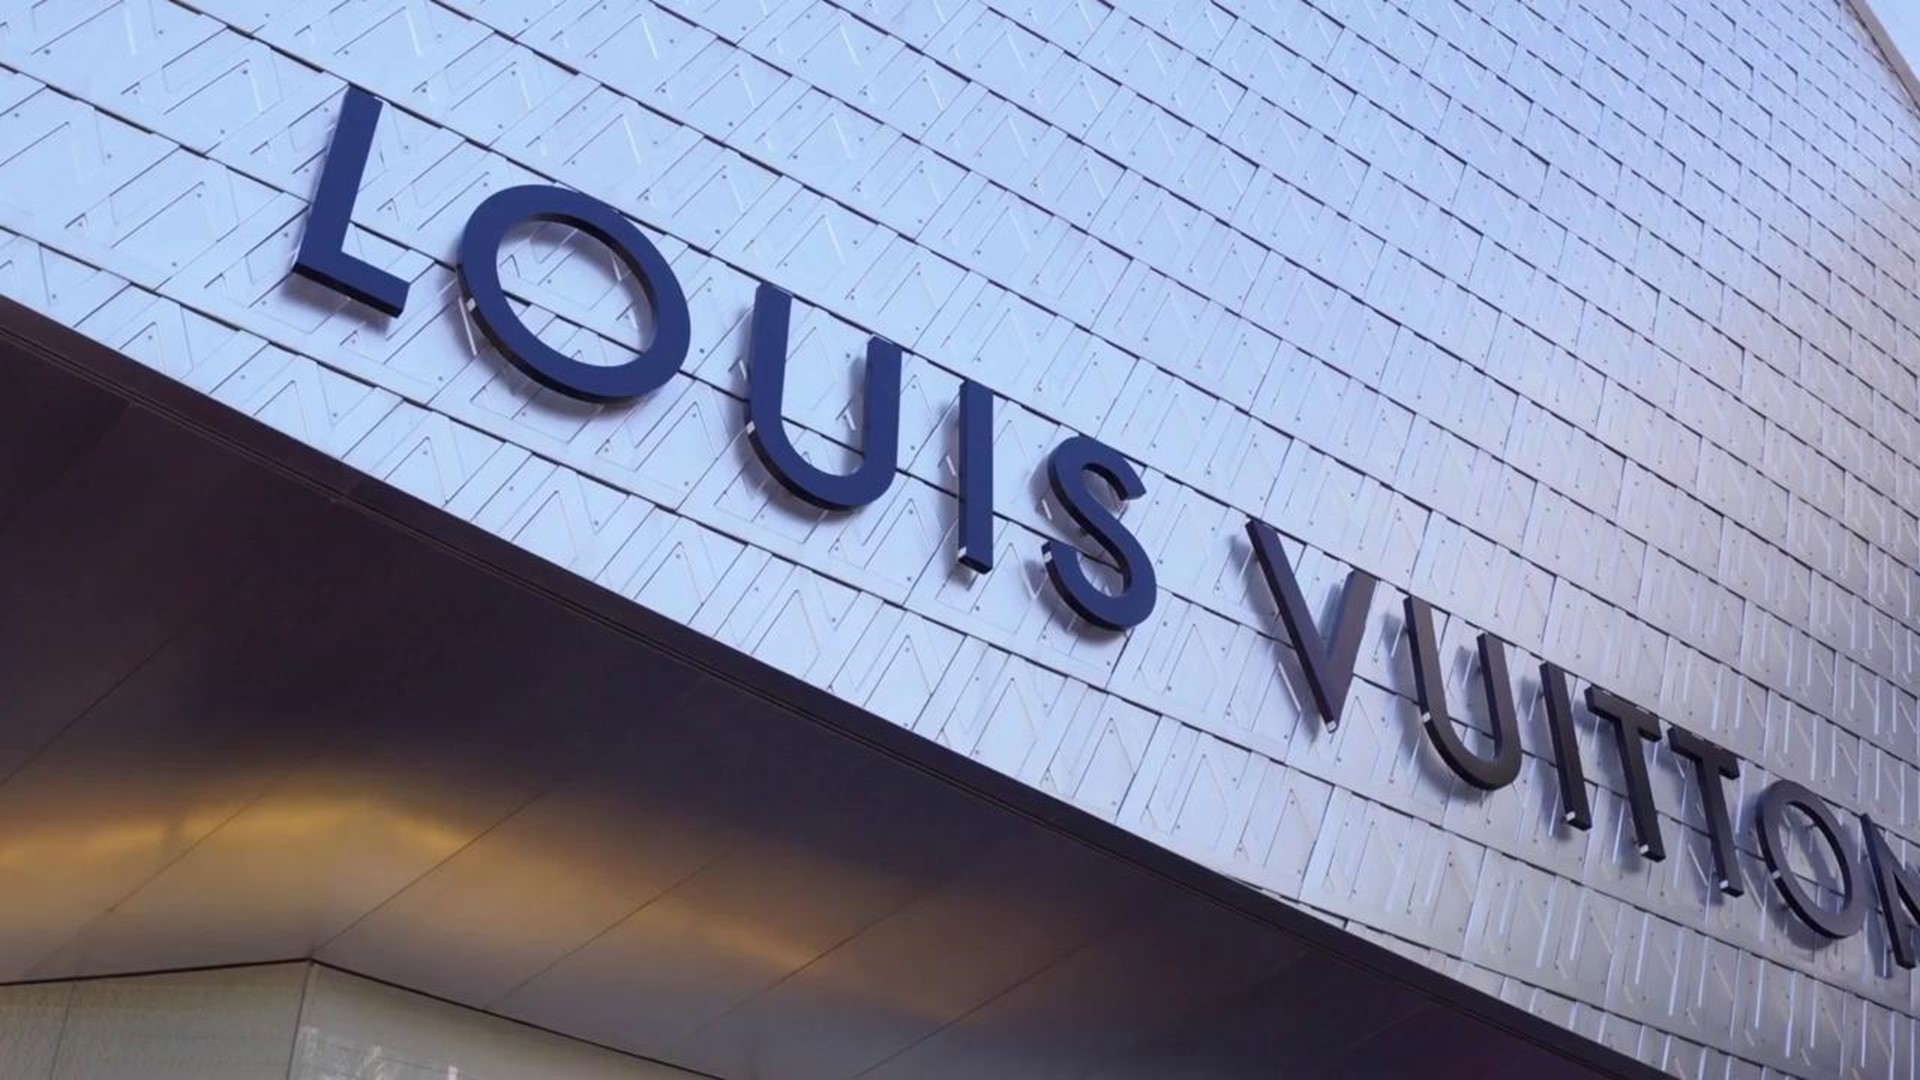 Louis Vuitton Seattle Outlet